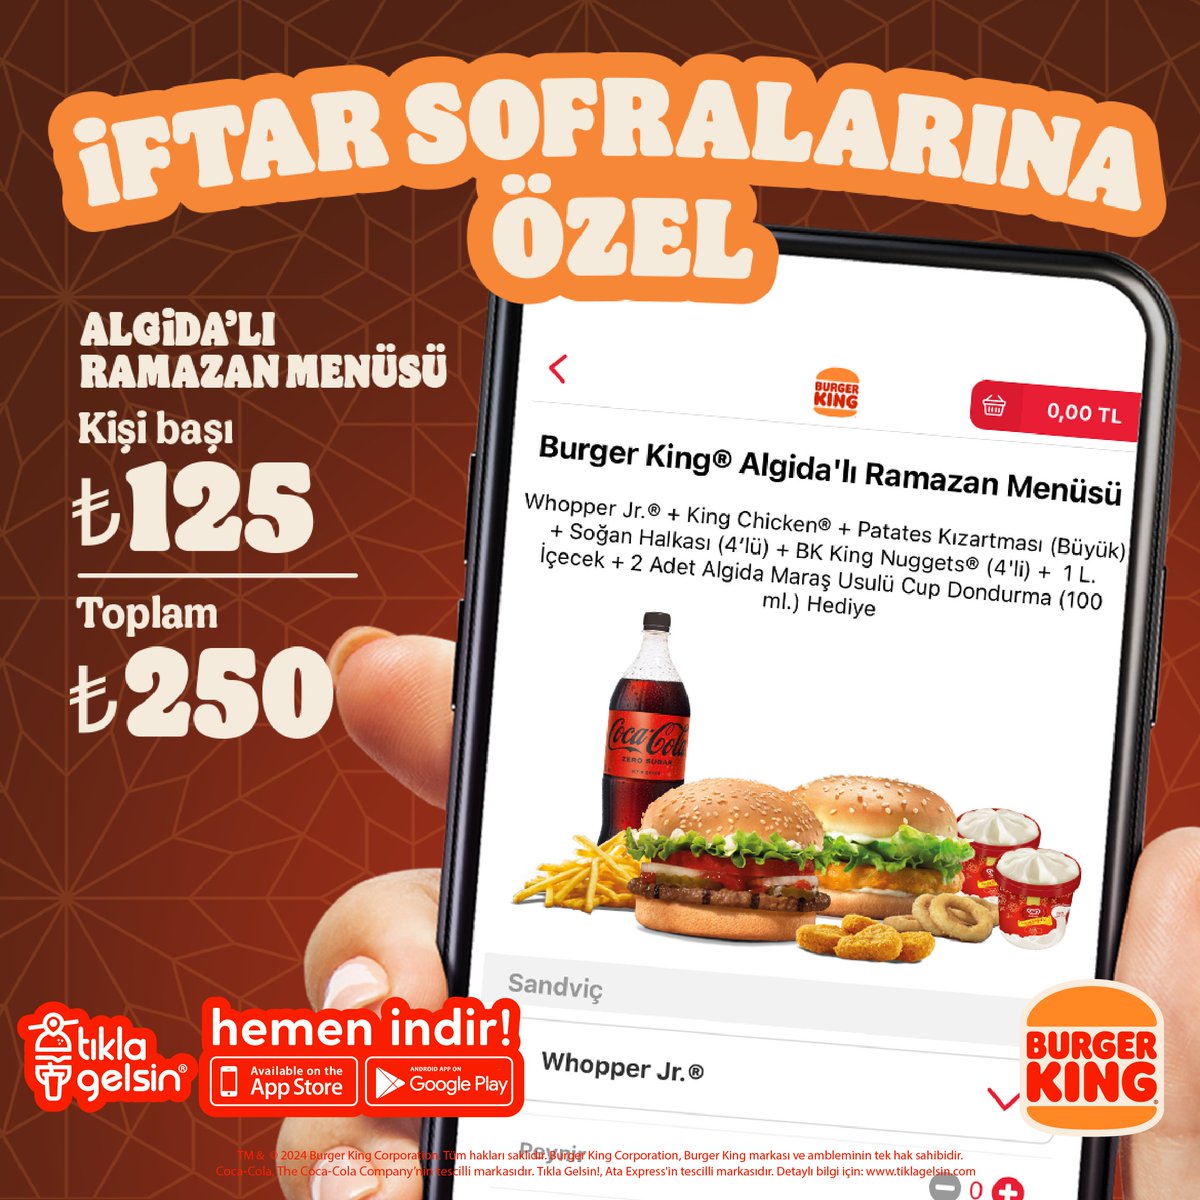 Burger King® Algida’lı Ramazan Menüsü seni bekliyor! Tıkla Gelsin®’den söyleyeceğin Algida’lı Ramazan Menüsü kişi başı 125 TL, toplam 250 TL.